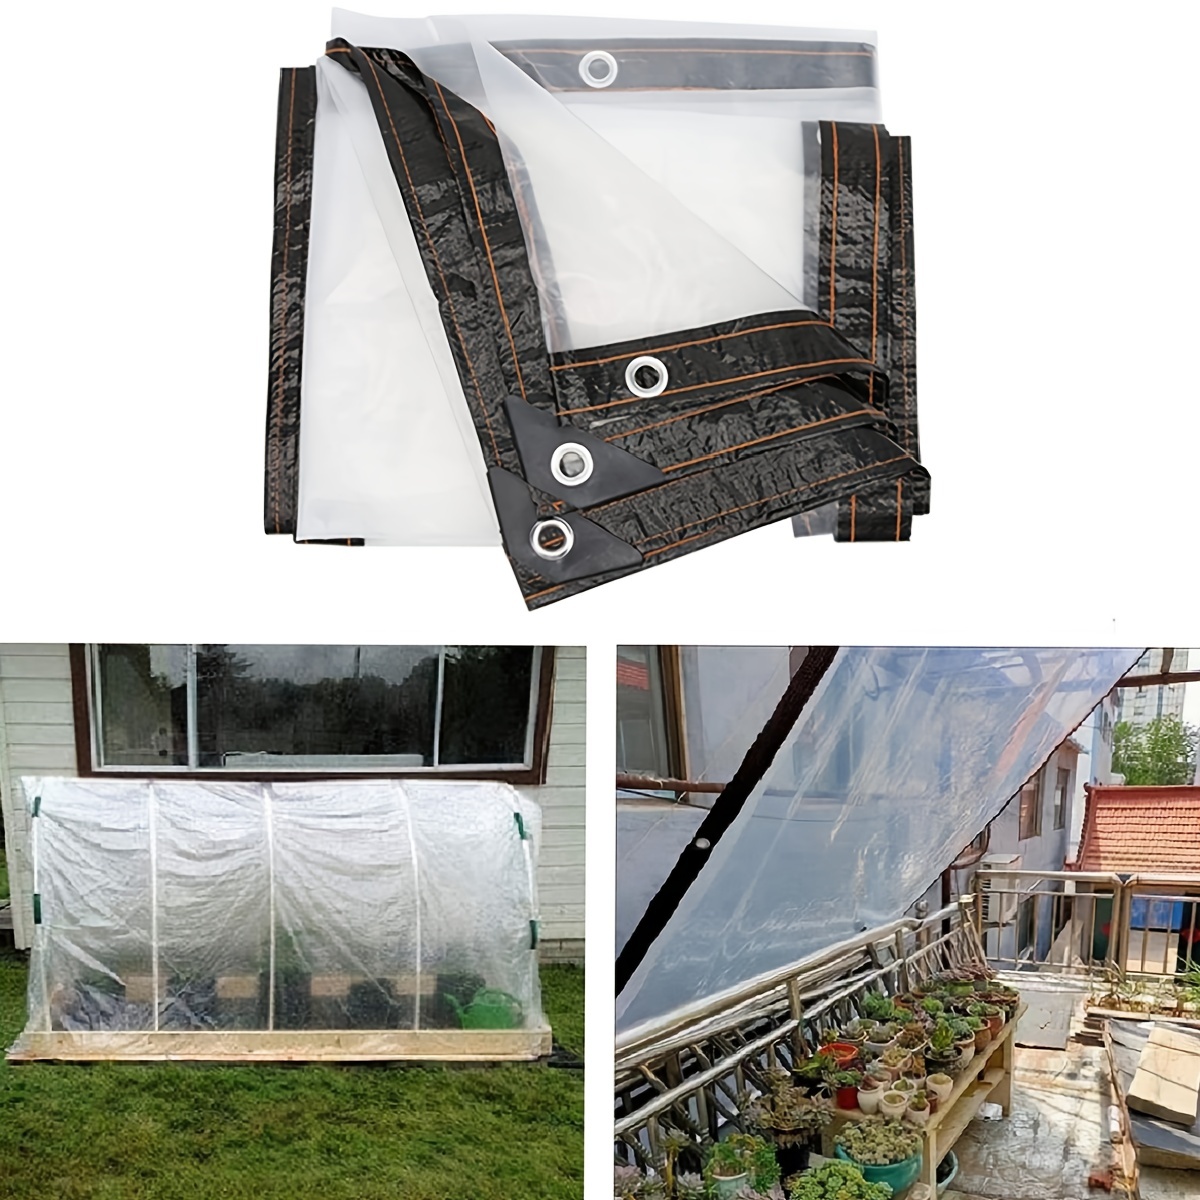  Lona impermeable transparente con ojales, material de PVC  plegable, grueso y duradero, cubierta aislante de plantas a prueba de  lluvia y polvo, toldo de muebles de patio, hoja de camping al